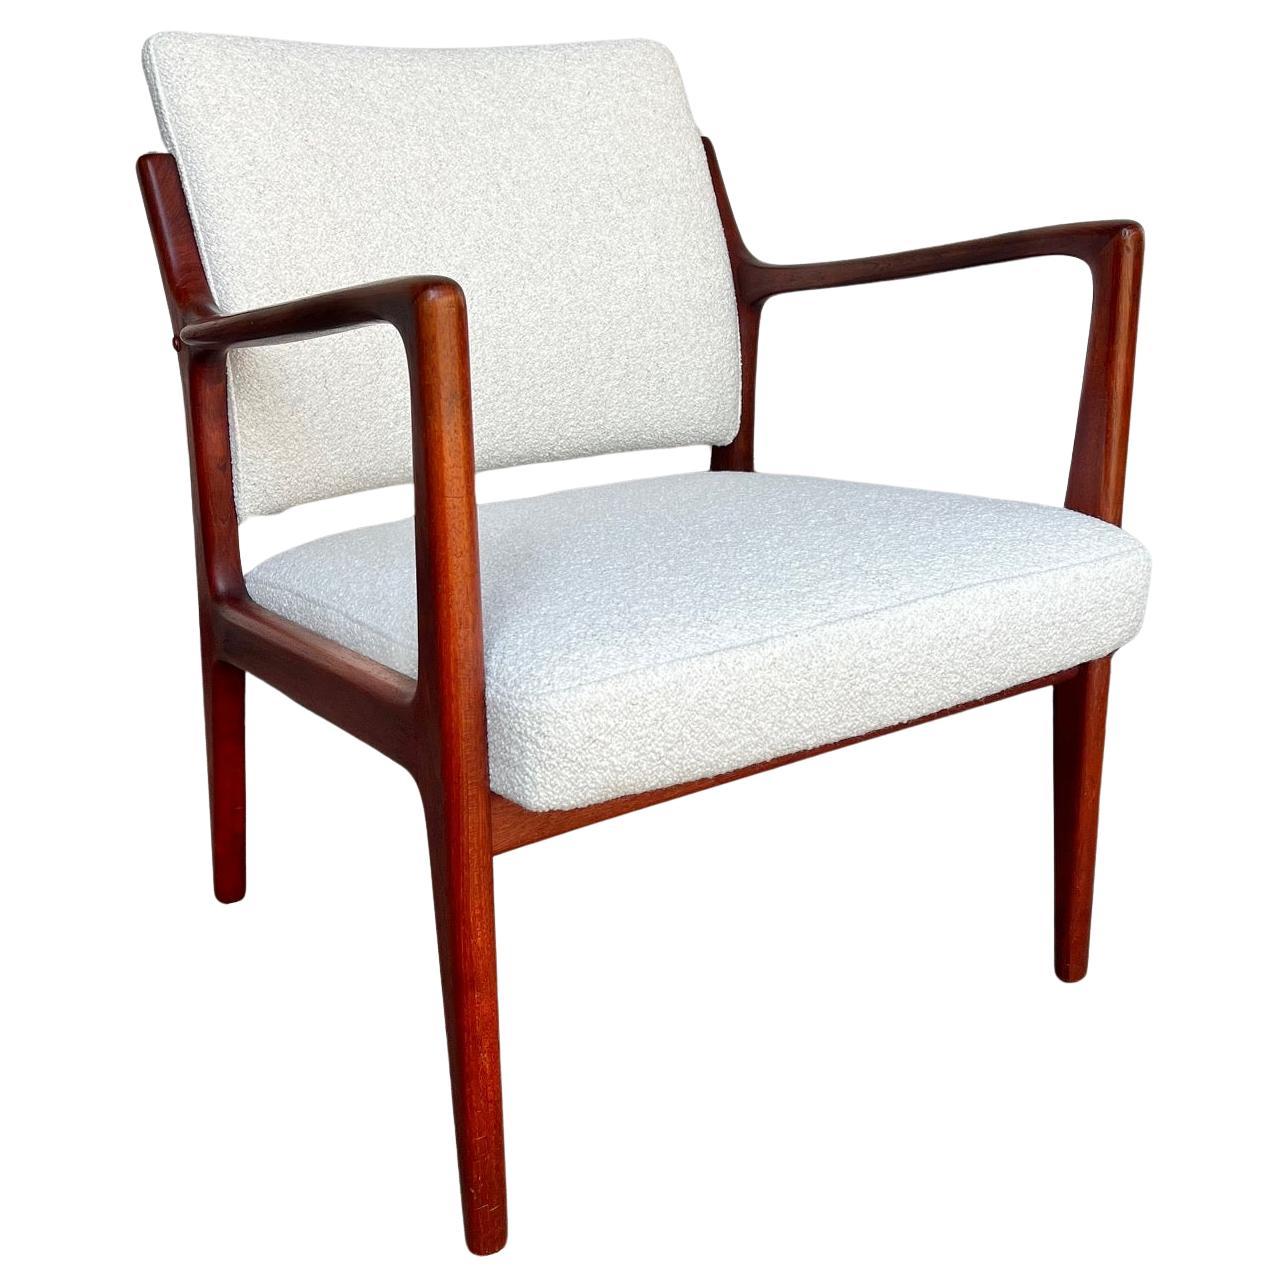 Easy chair in teak by Karl-Erik Ekselius For Sale